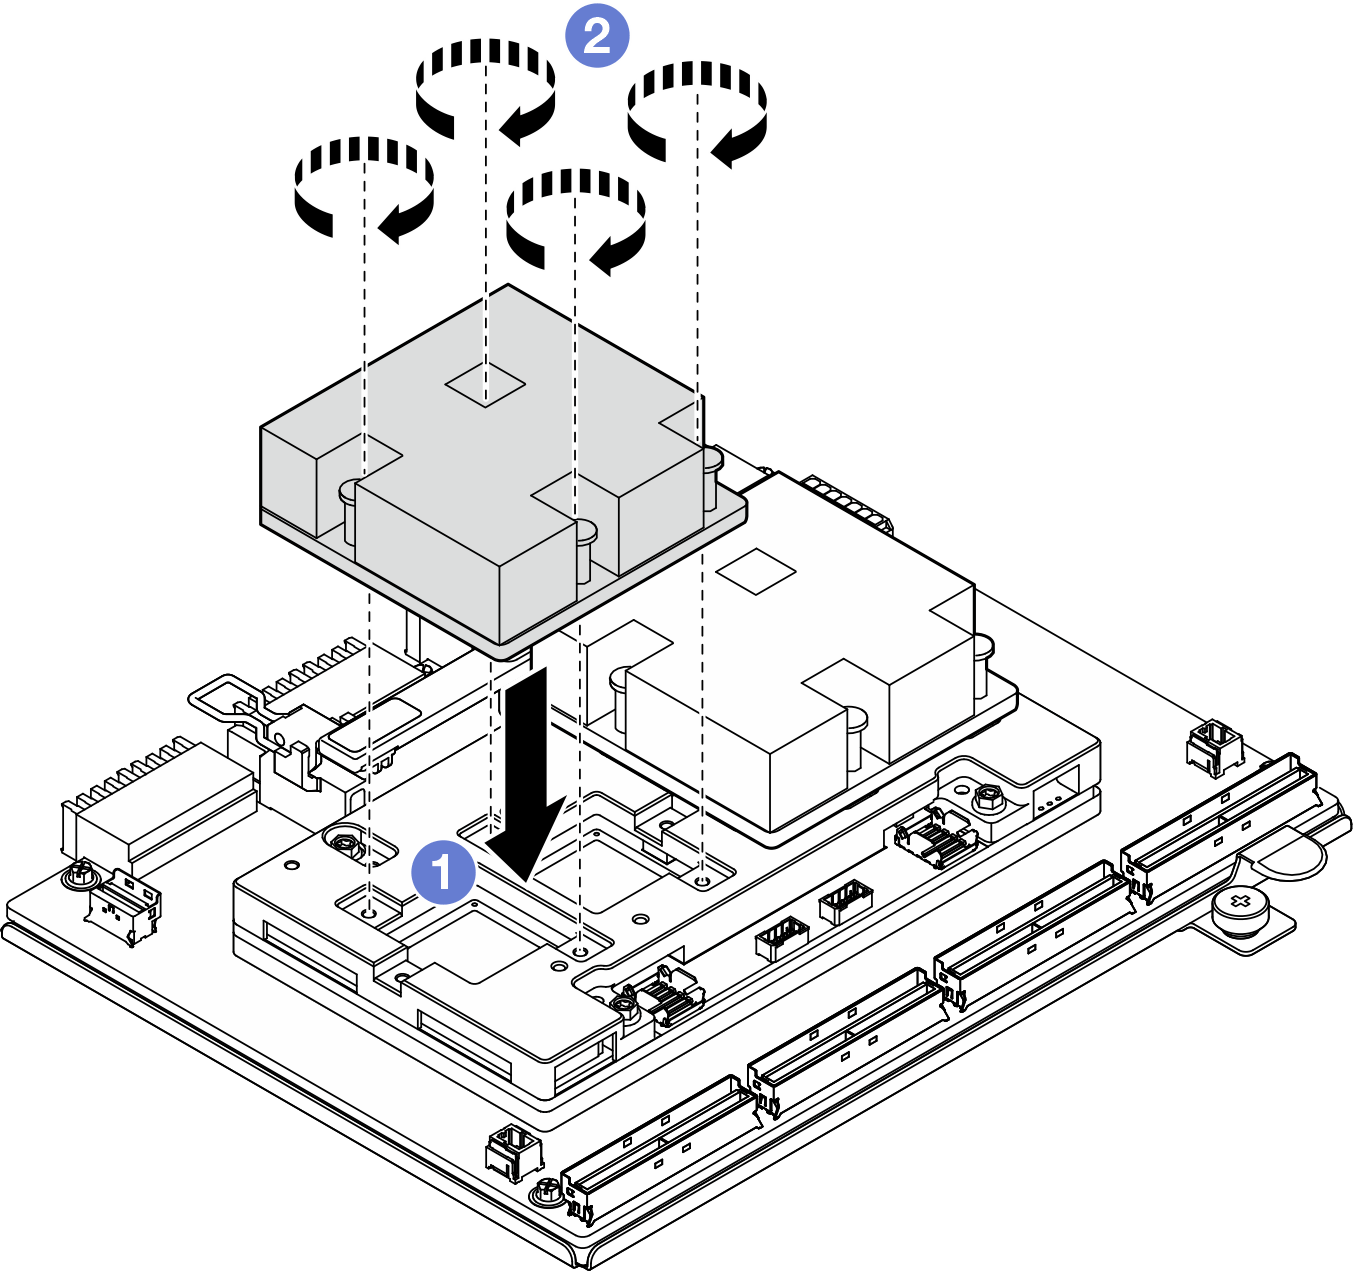 Disipador de calor de CX-7 installation